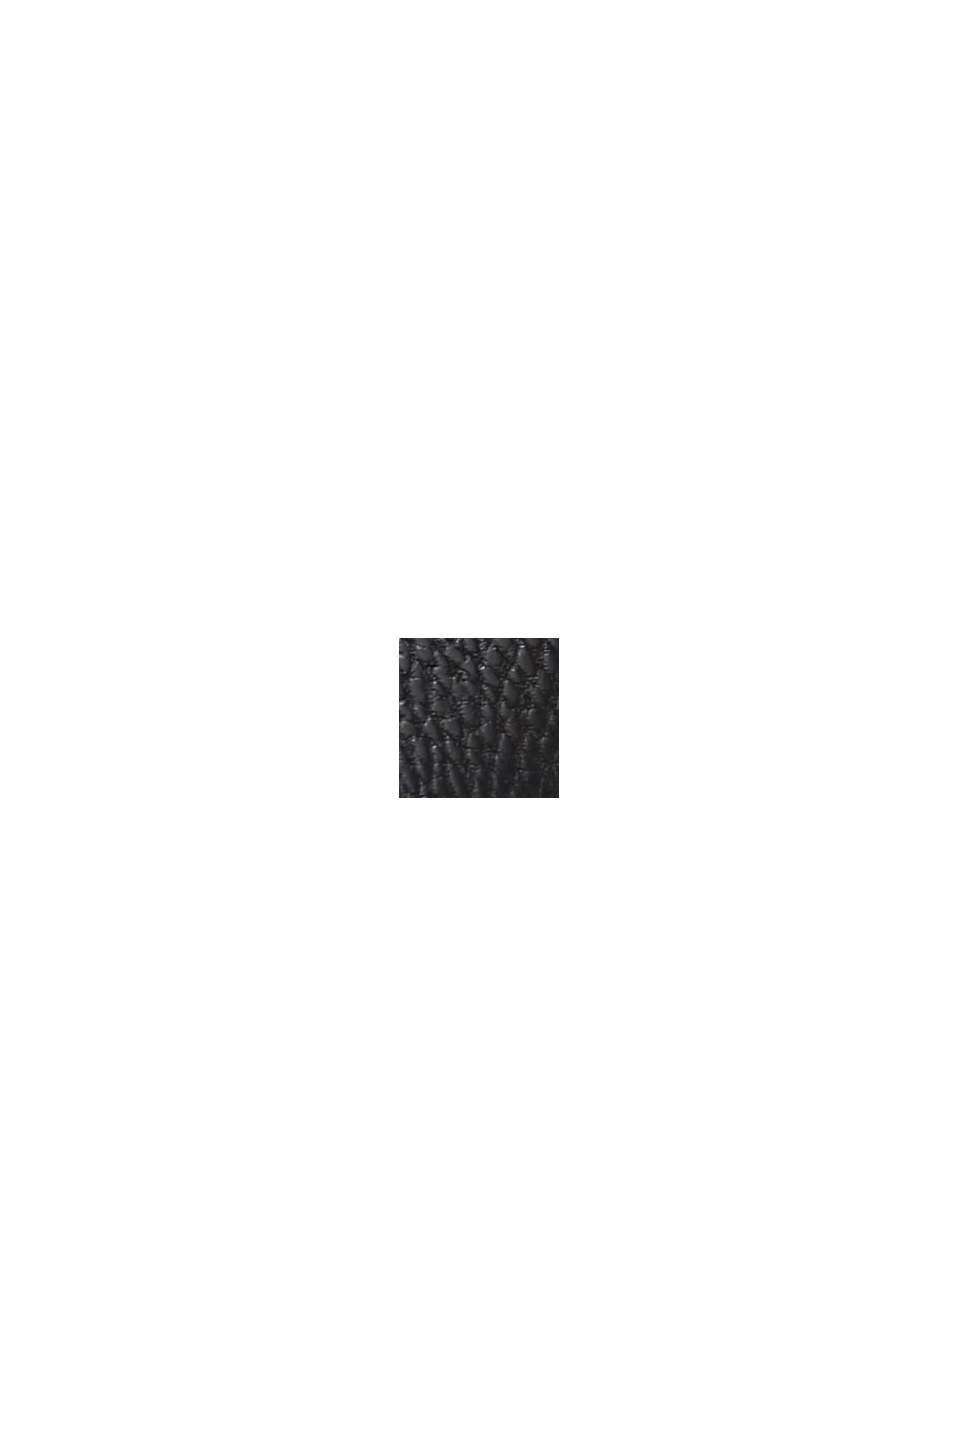 Botas de cordones impermeables en polipiel, BLACK, swatch